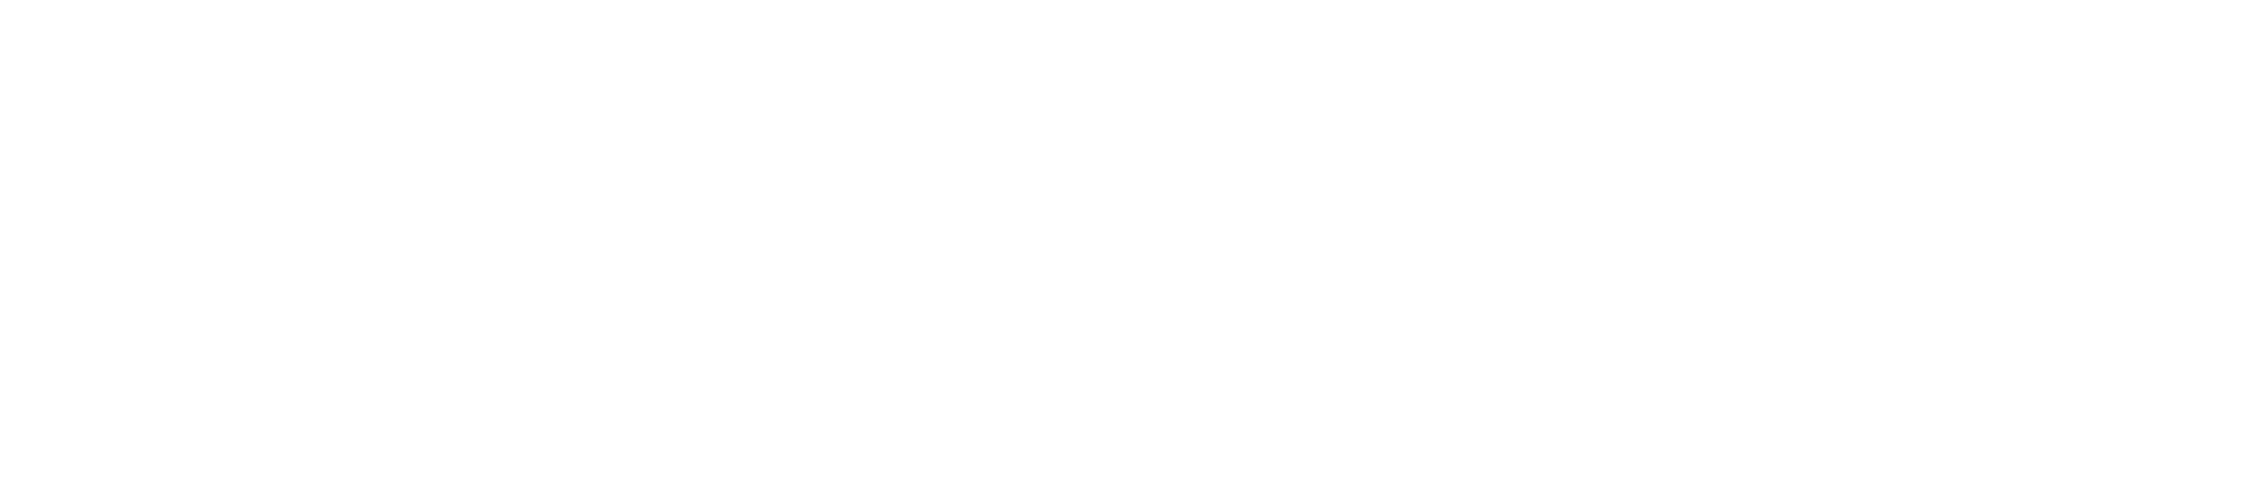 Velvet Rose Box - Luxury Rose Boxes - Official Logo